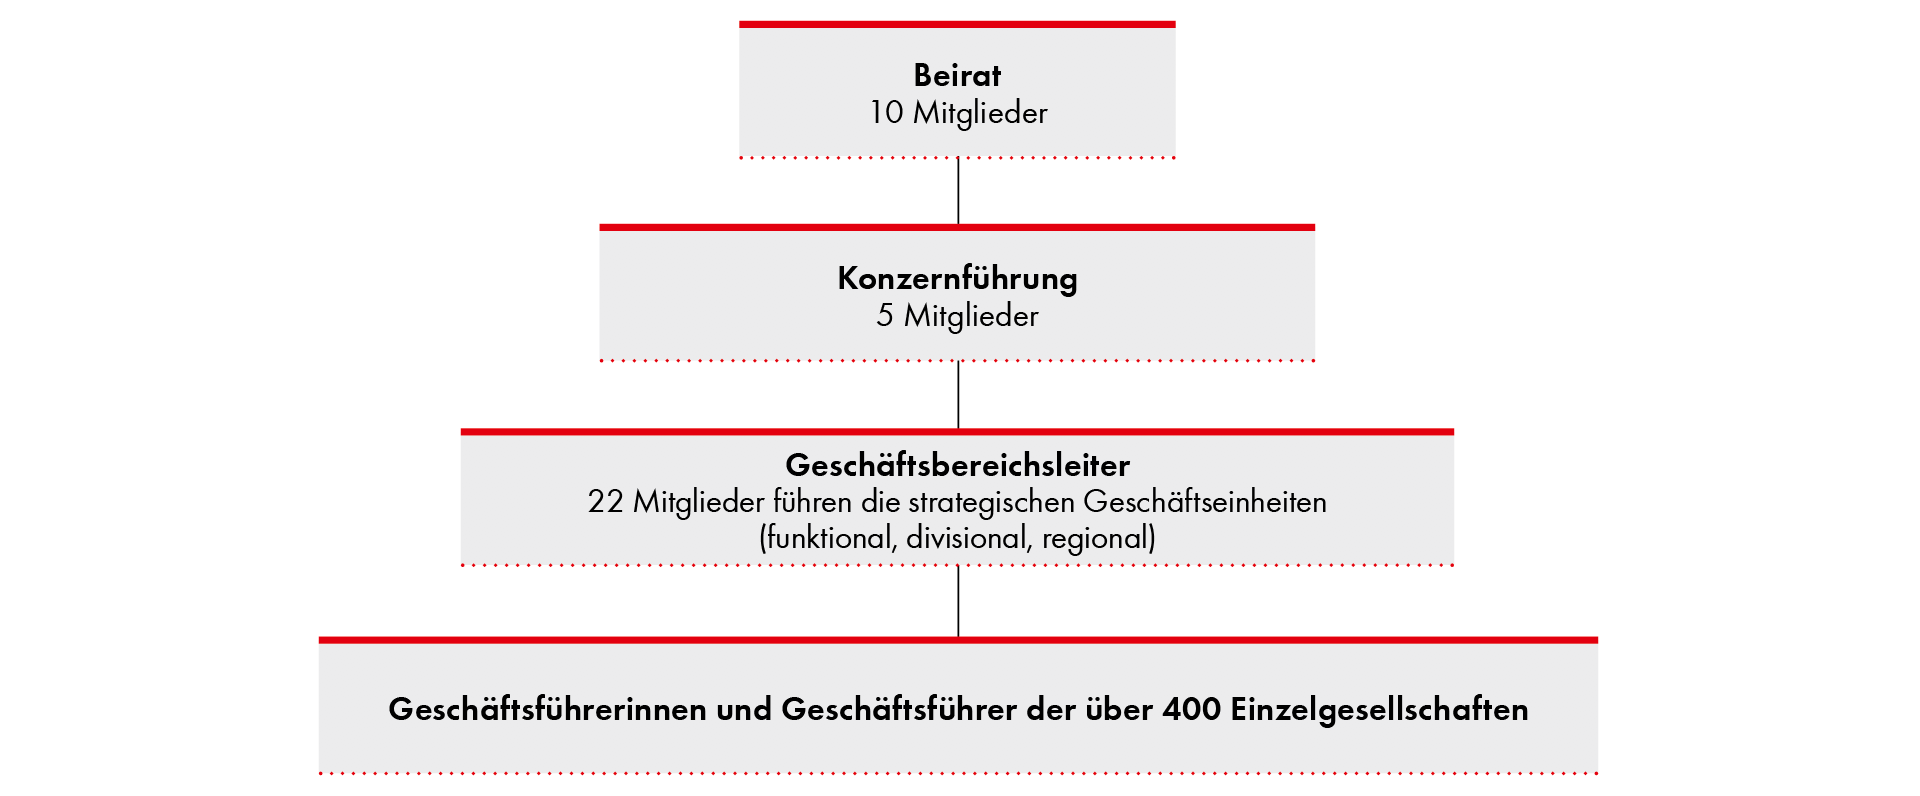 Organisatorische Struktur der Würth-Gruppe